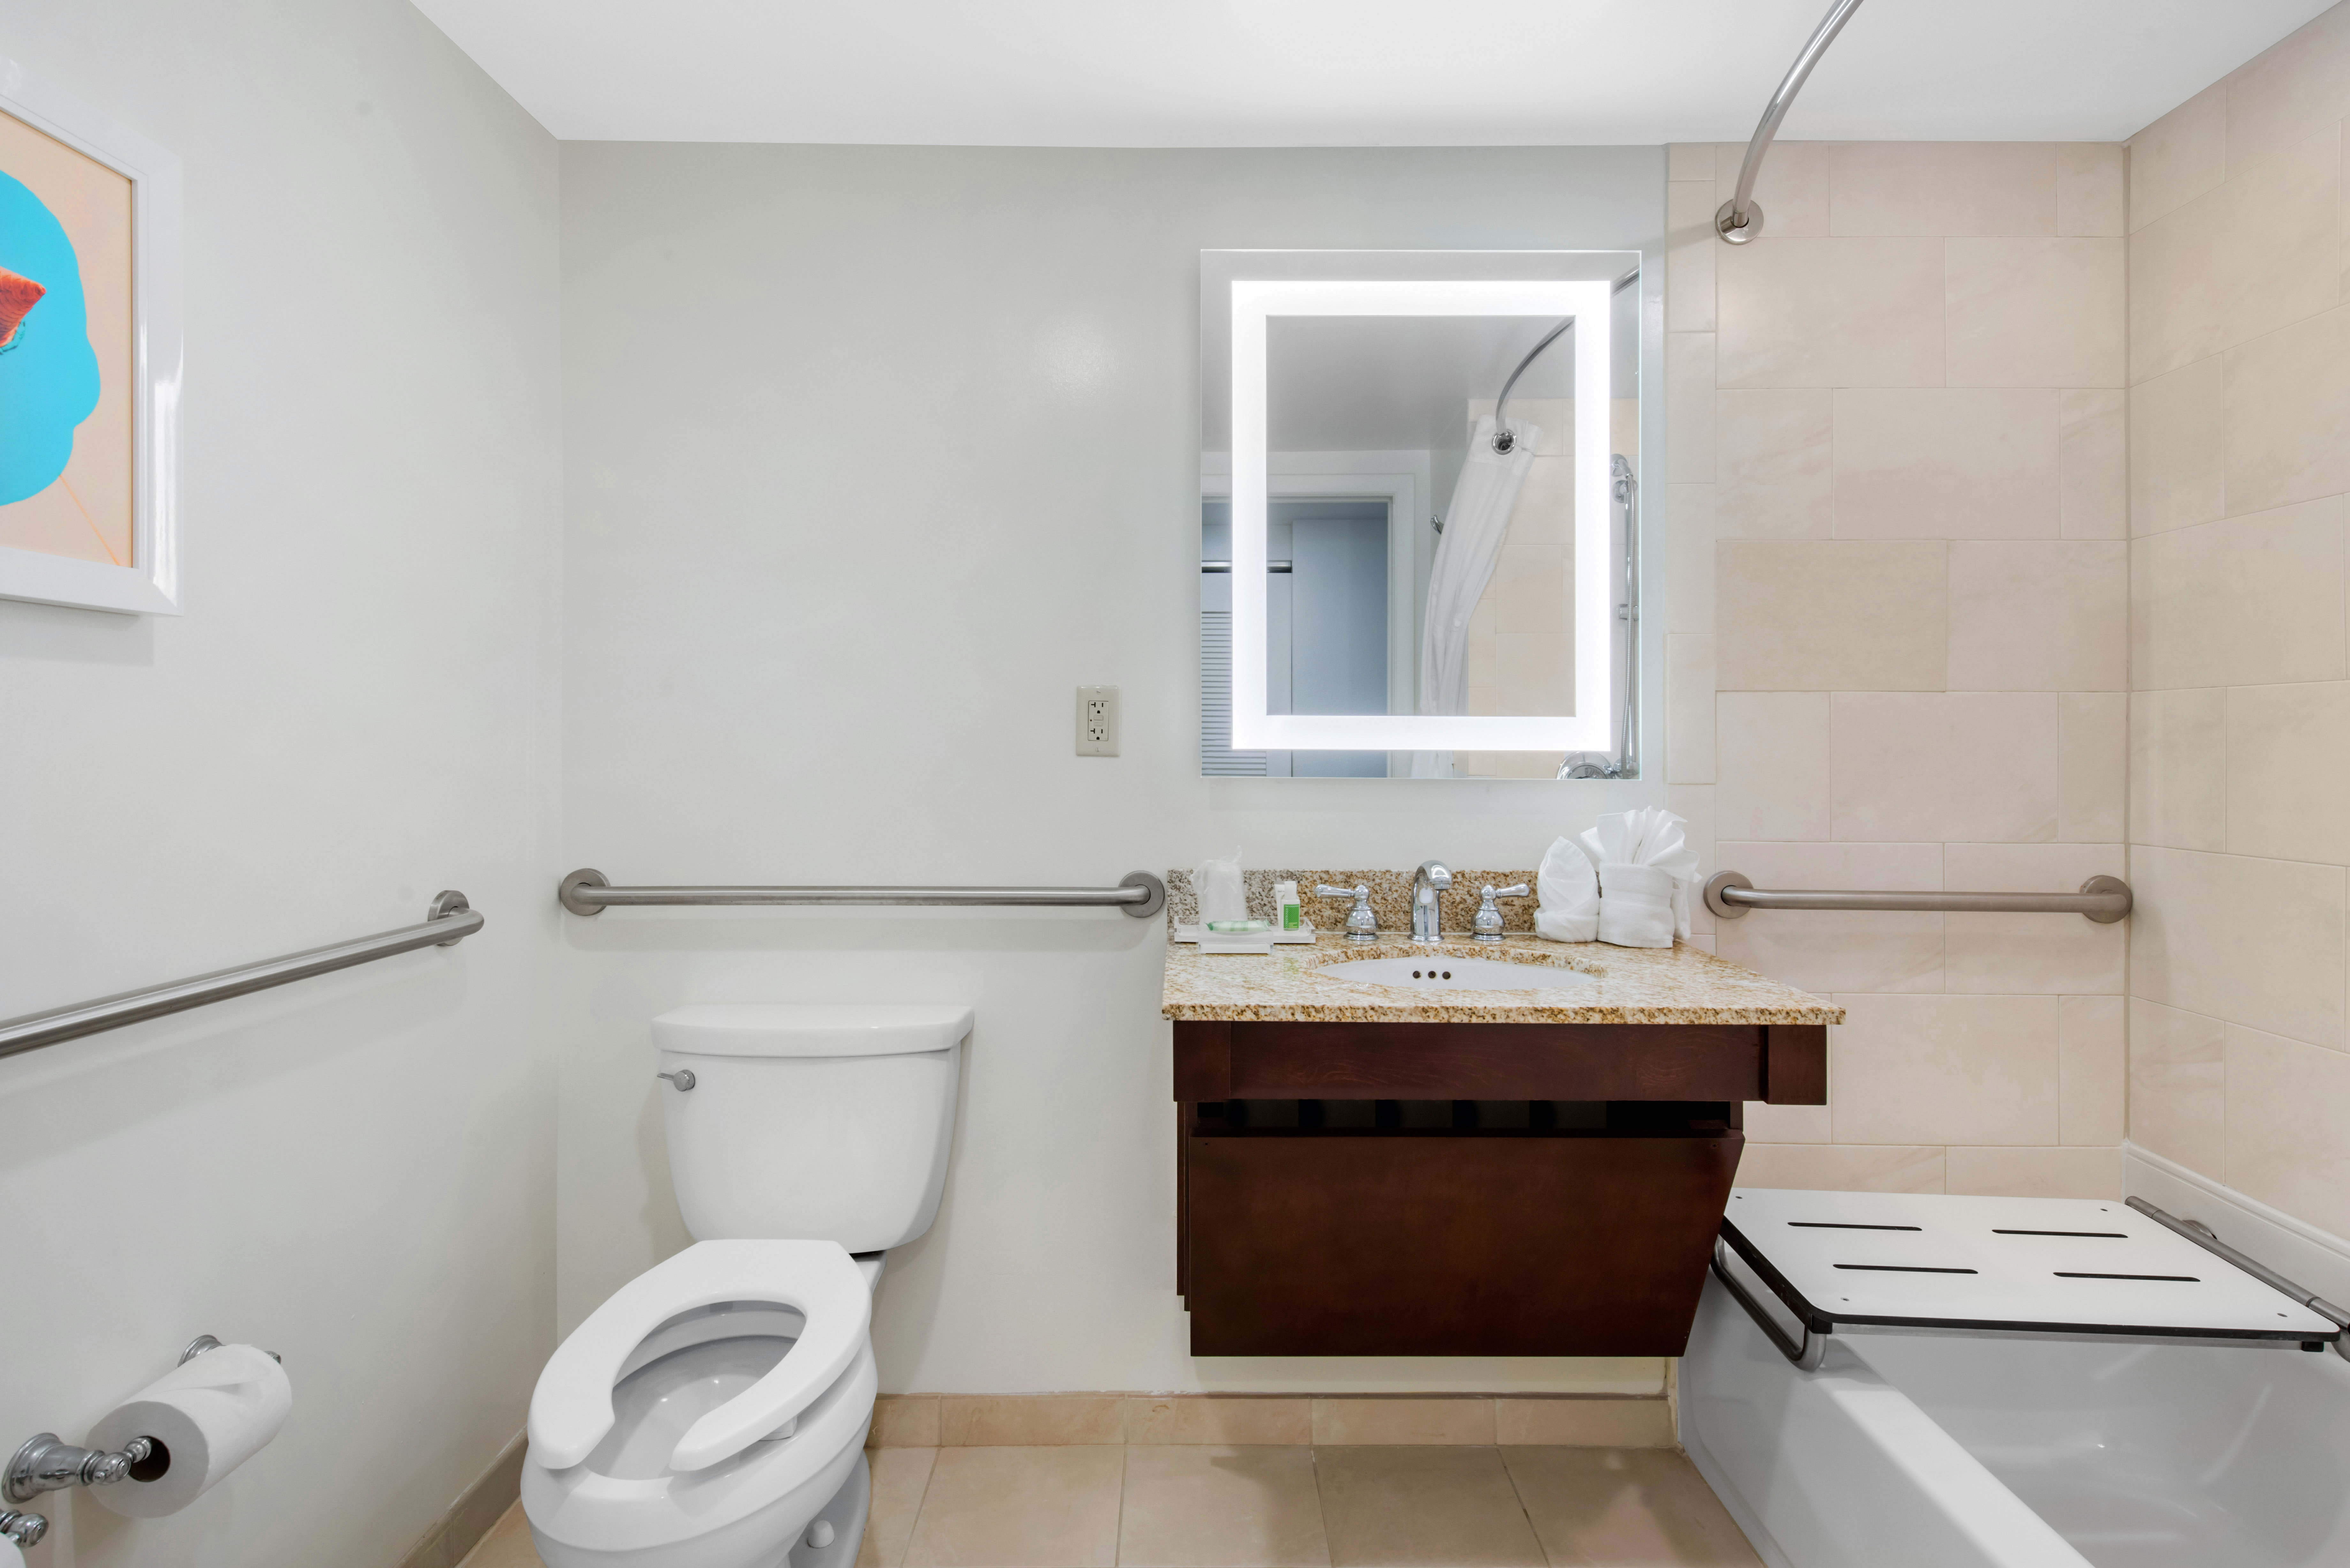 Modern, Clean & Spacious Guest Bathrooms - ADA Accessible